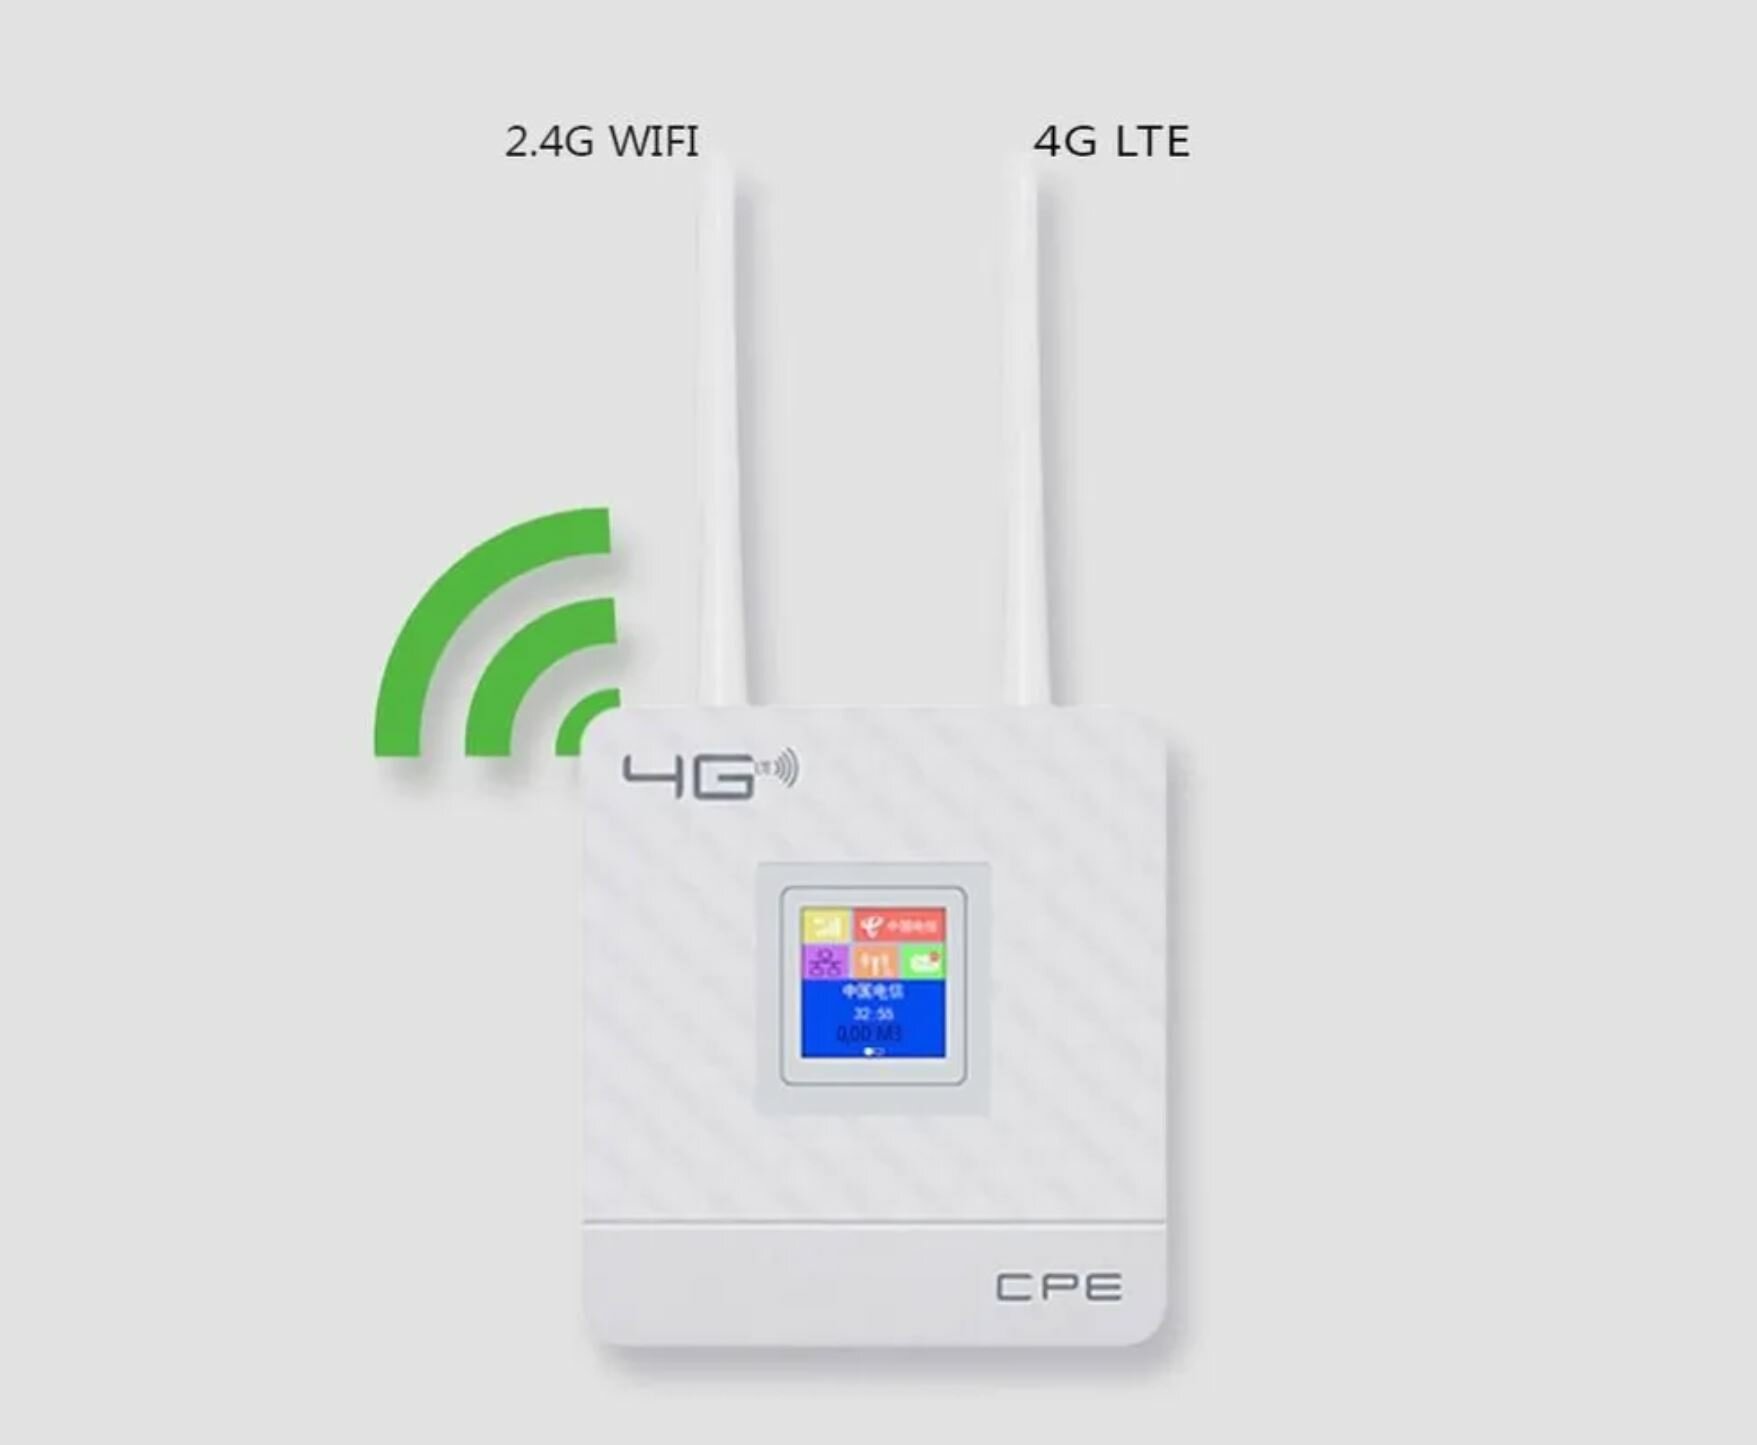 Модем CPE903-E 4G беспроводной Wi-Fi роутер 150 Мбит/с высокоскоростной 4G LTE роутер со слотом для SIM-карты